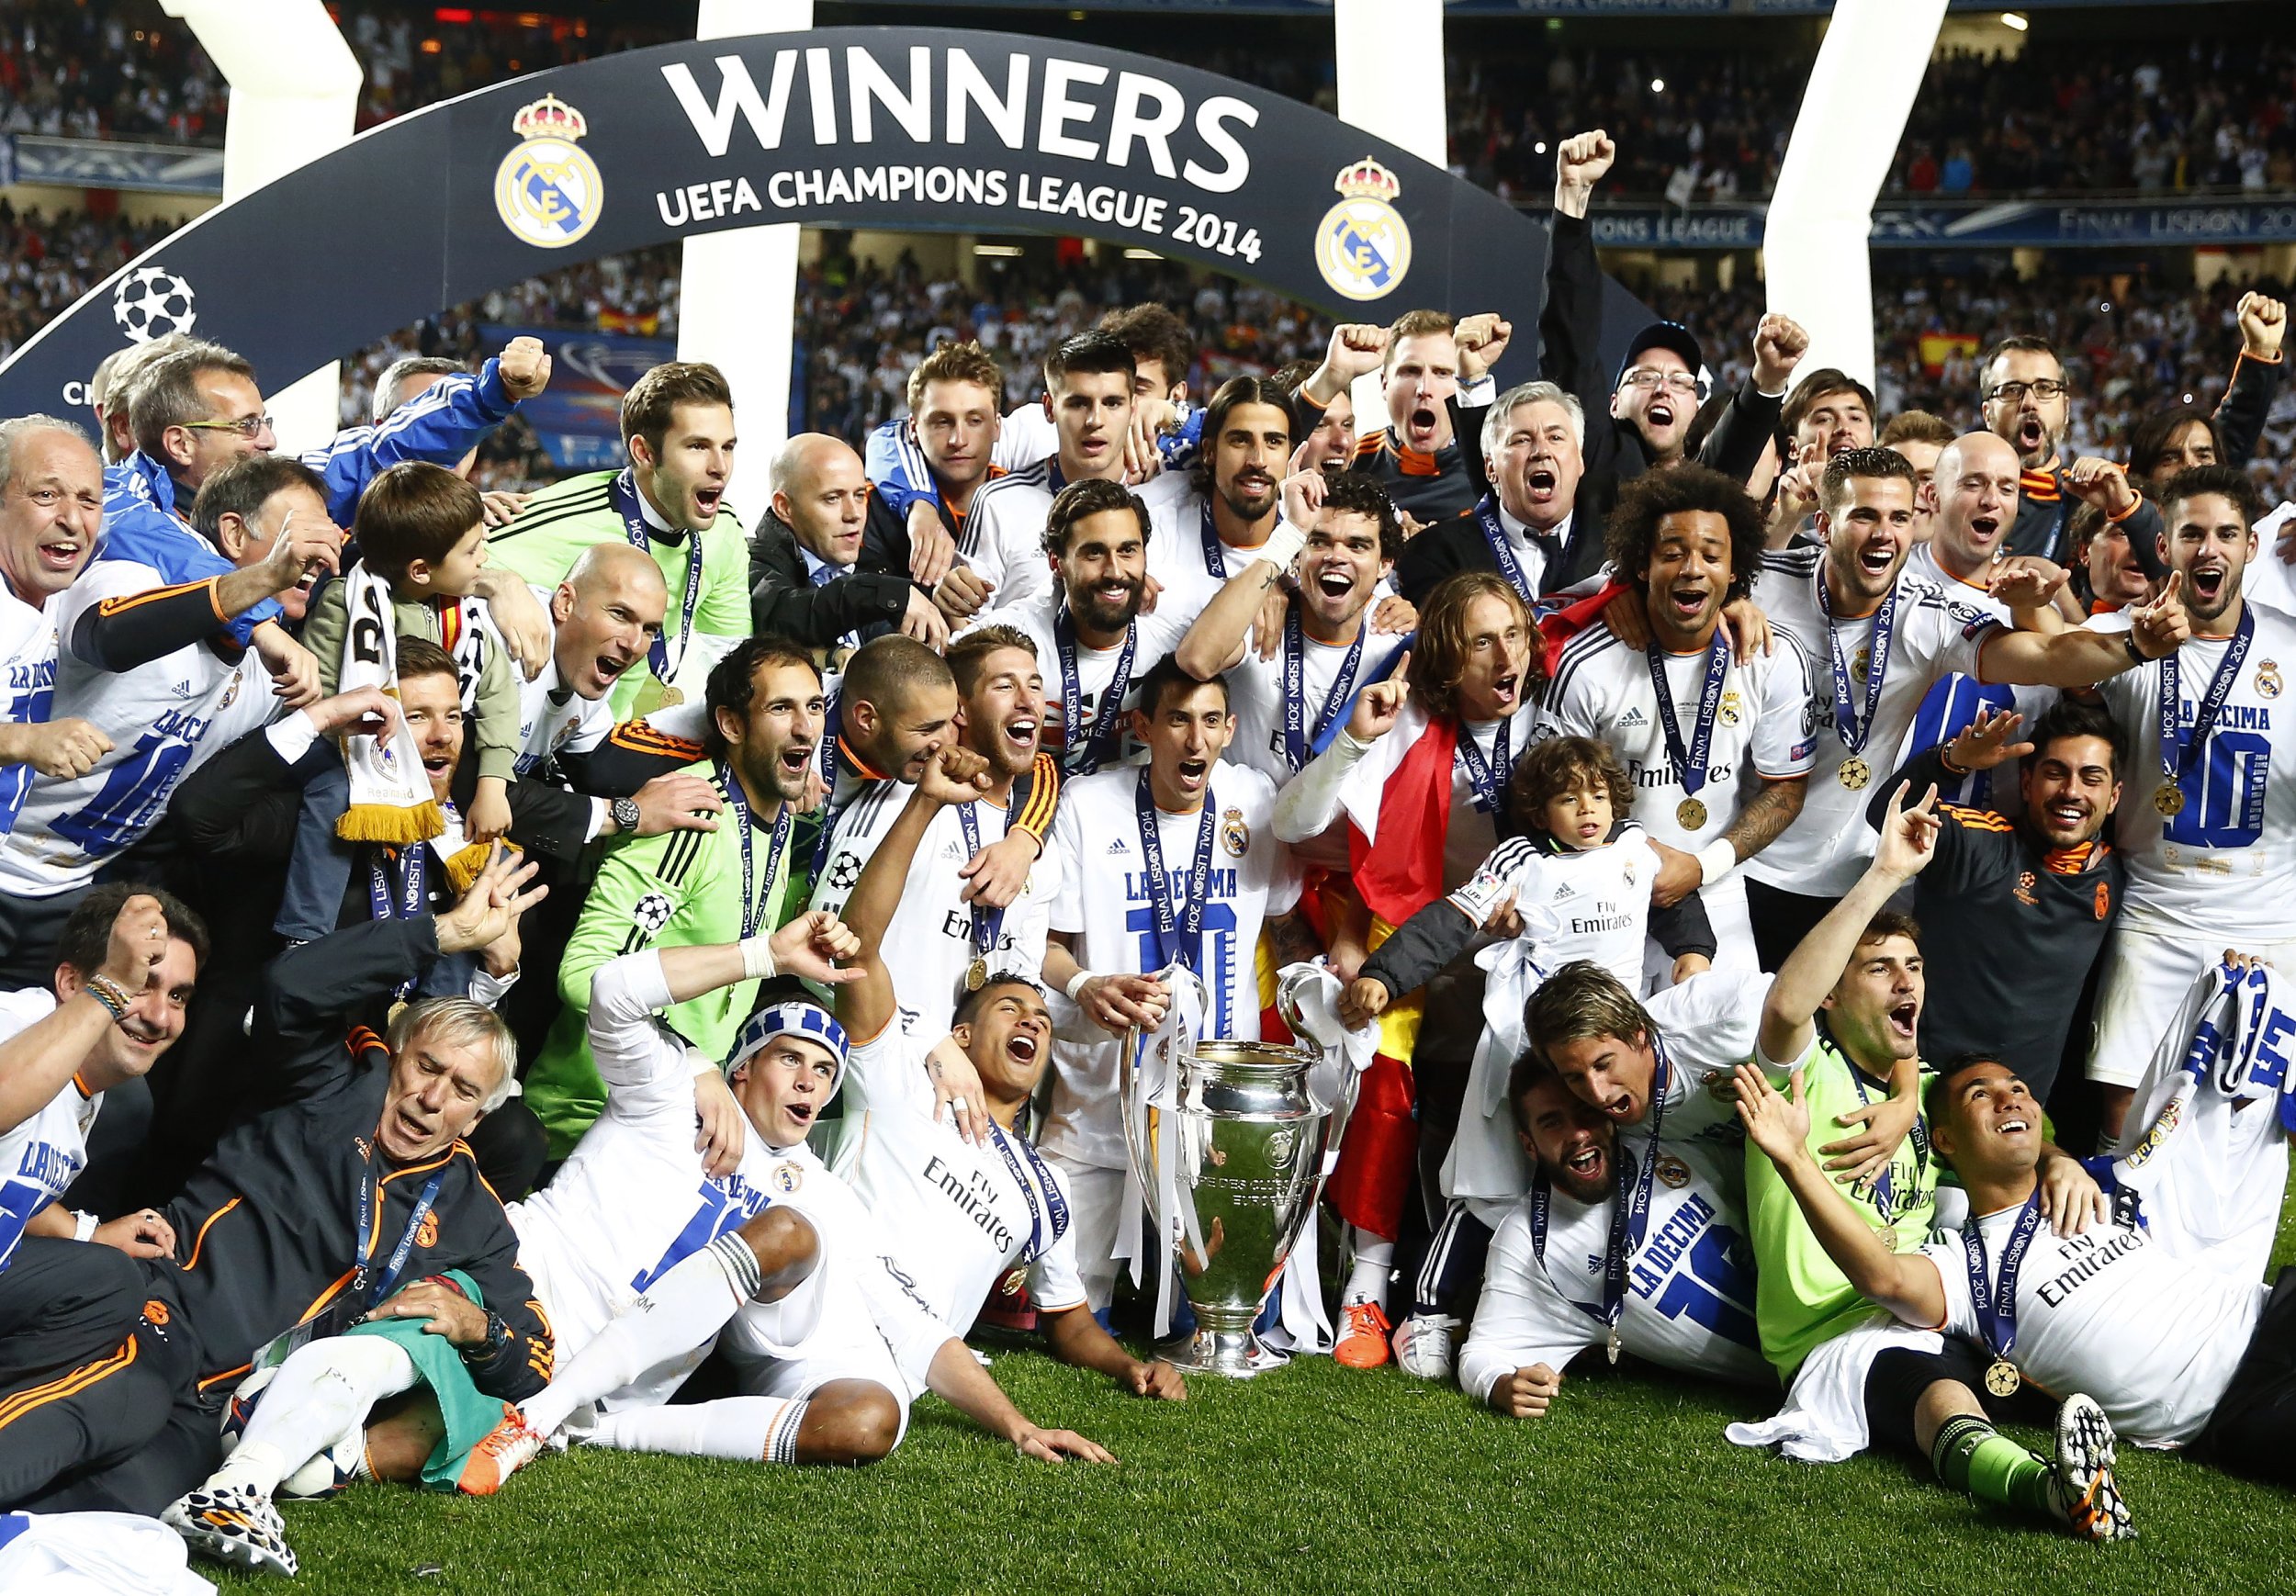 Клуба в 2014 году. Реал Мадрид победитель Лиги чемпионов. Реал Мадрид победитель ЛЧ 2014. Реал Мадрид чемпион Лиги чемпионов. Реал Мадрид победитель ЛЧ 2016.